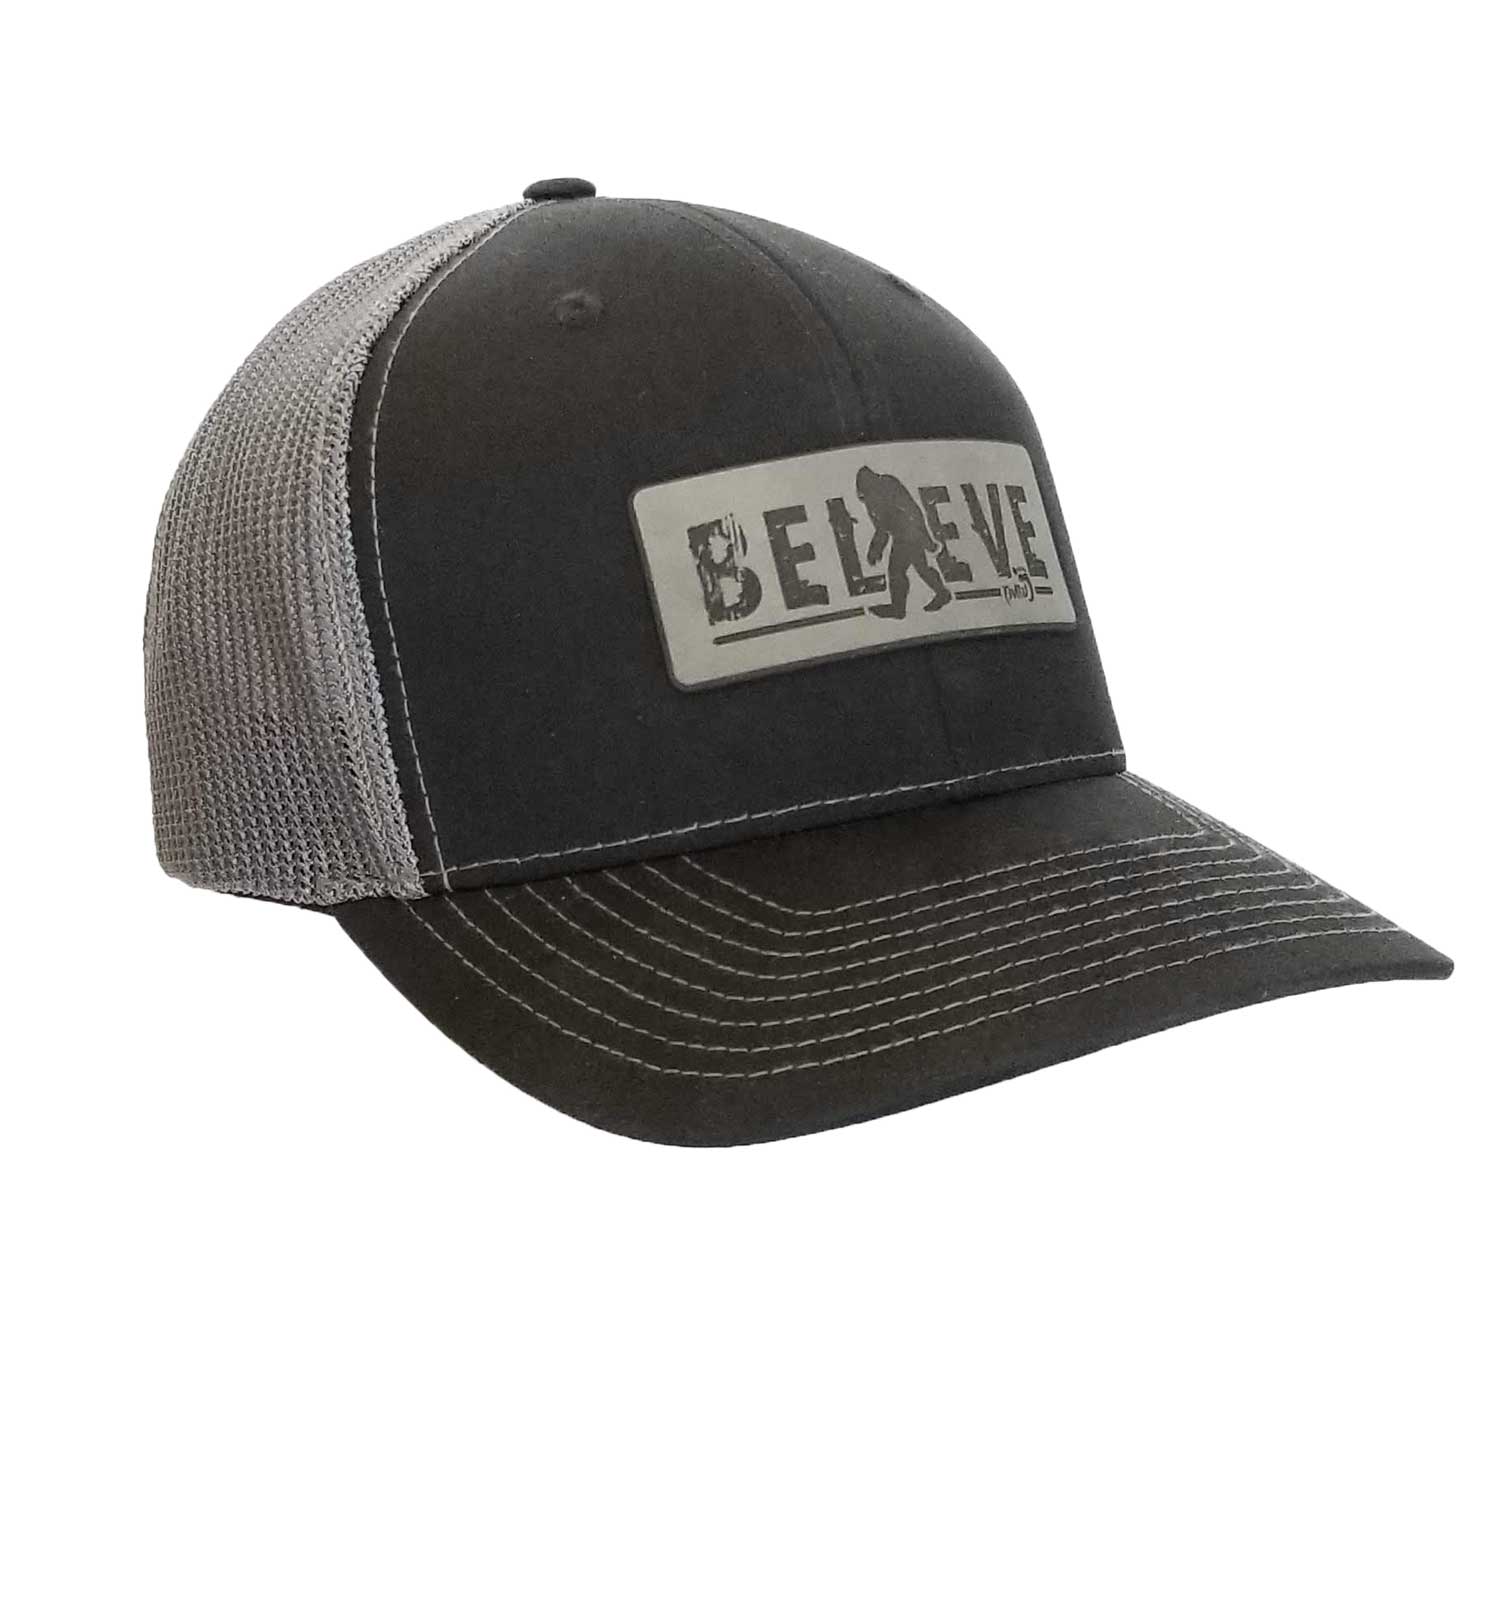 Bigfoot Believe Trucker Hat - R Flex Black Grey - Left